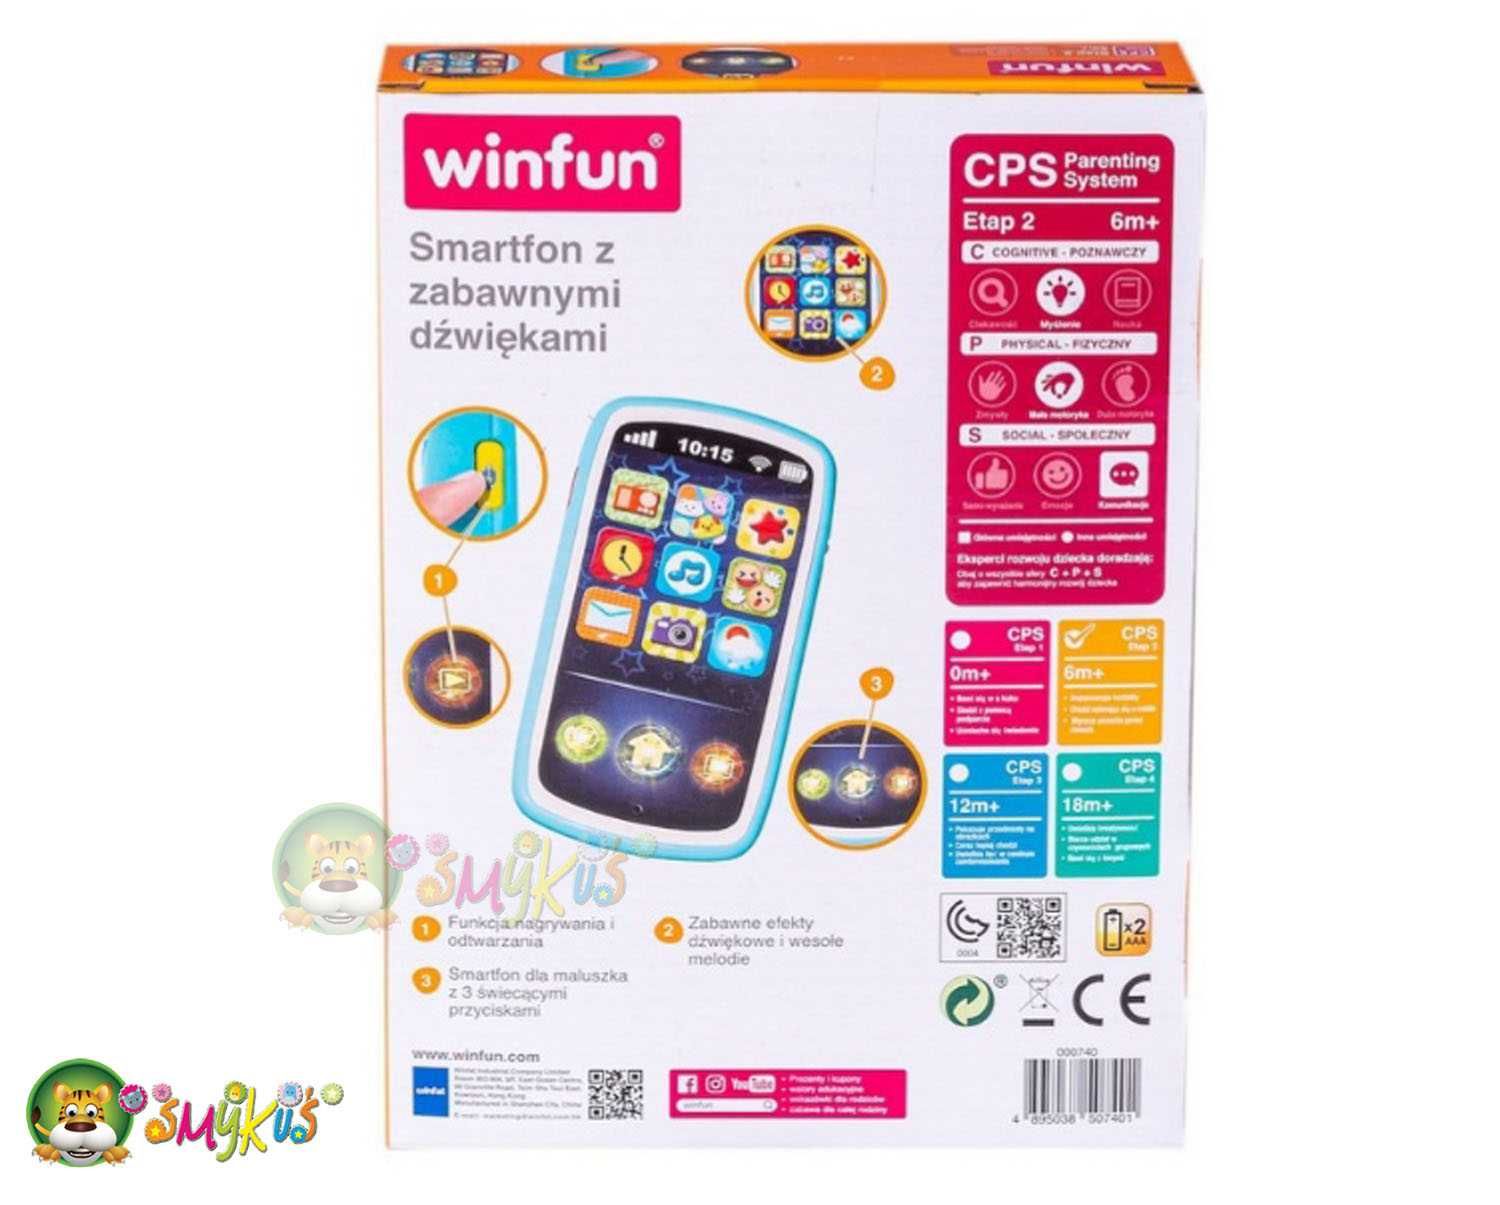 winfun smartfon dla dzieci z zabawnymi dźwiękami od 6 miesiąca życia